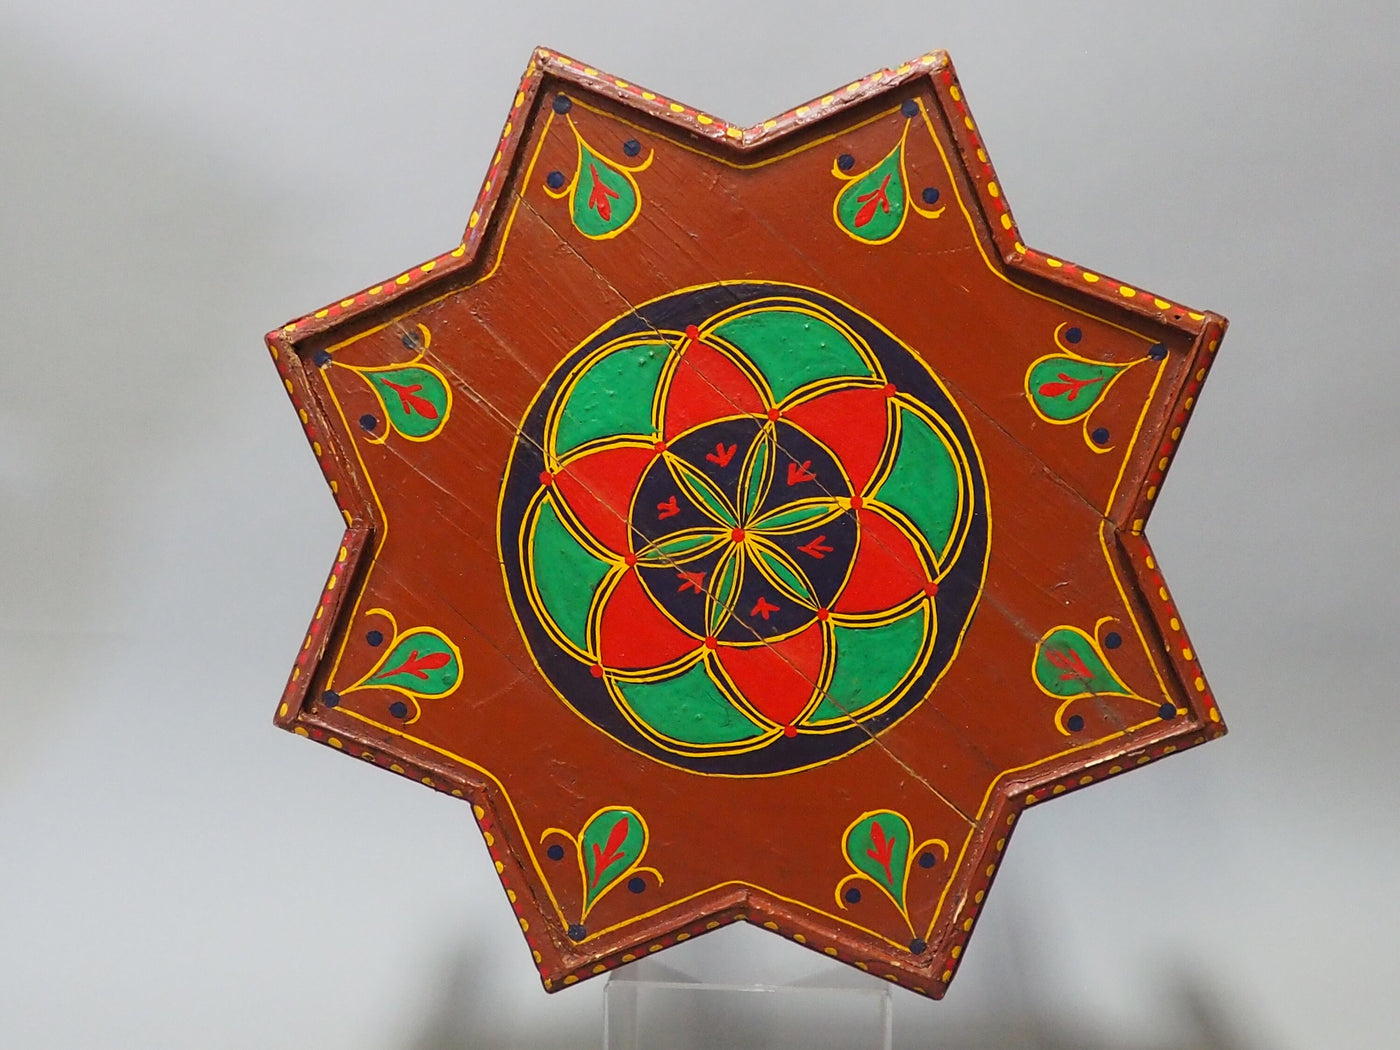 55 cm ∅ Massivholz handbemalte Stern Teetisch aus Afghanistan Nr:C Hocker Orientsbazar   